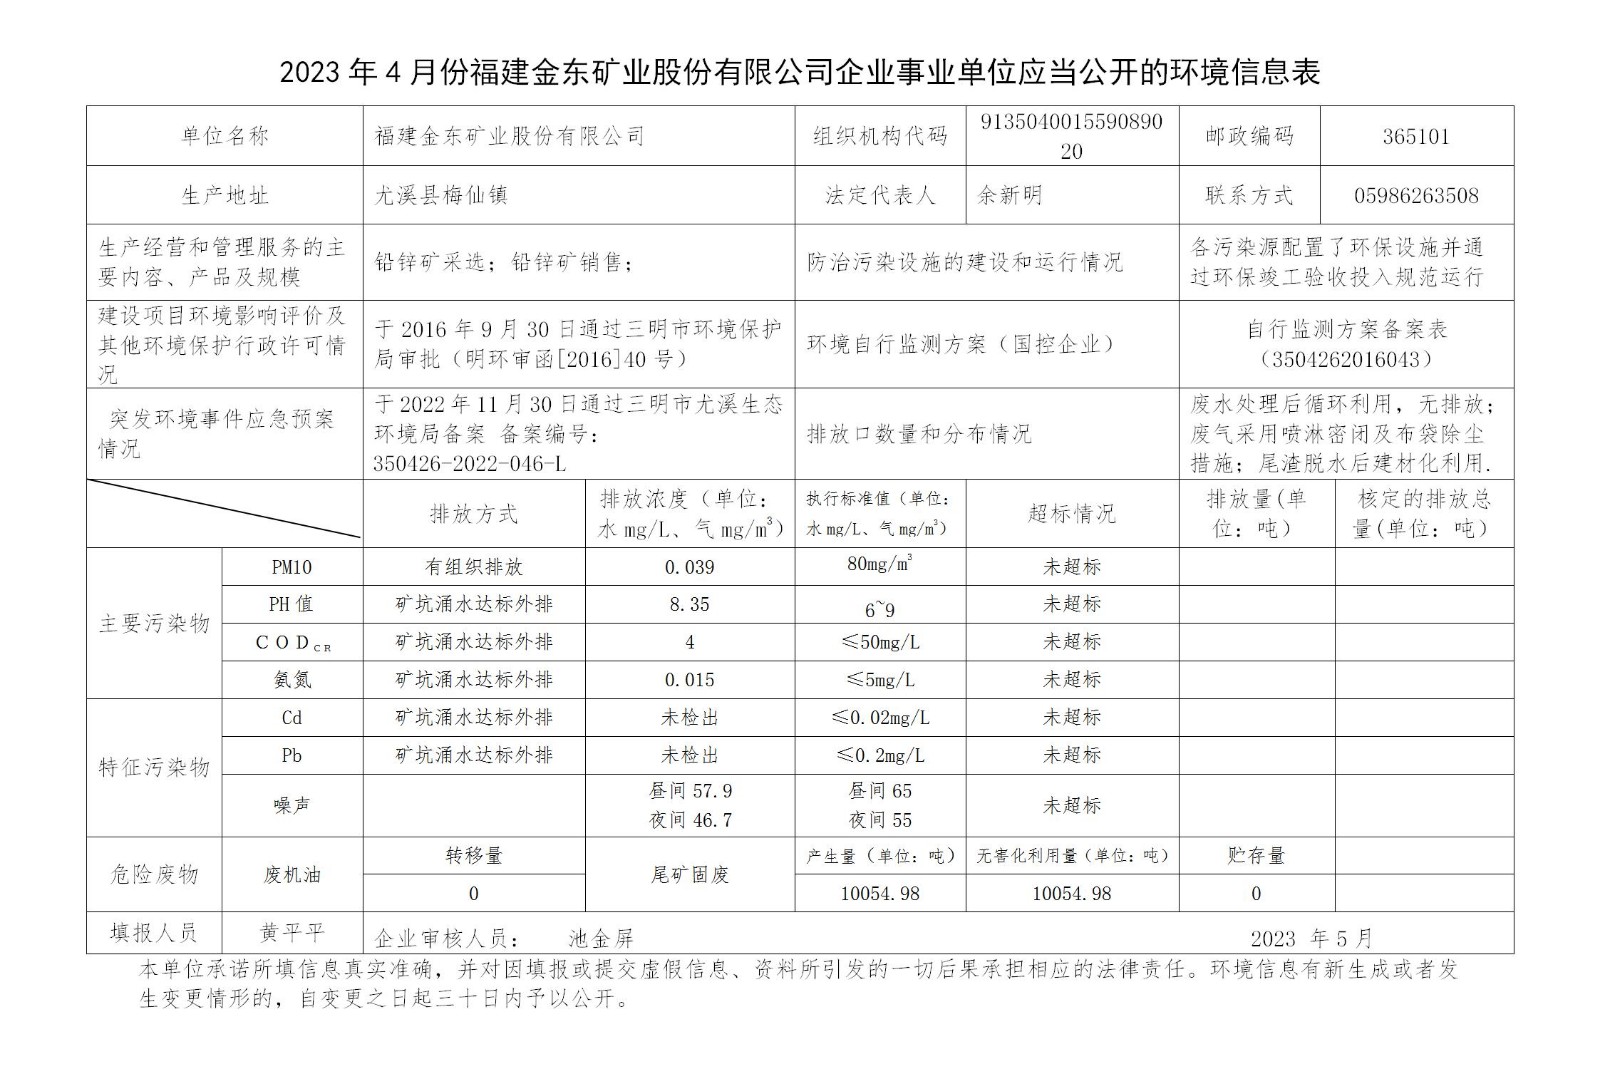 2023年4月份福建金东矿业股份有限公司企业事业单位应当公开的环境信息表_01.jpg